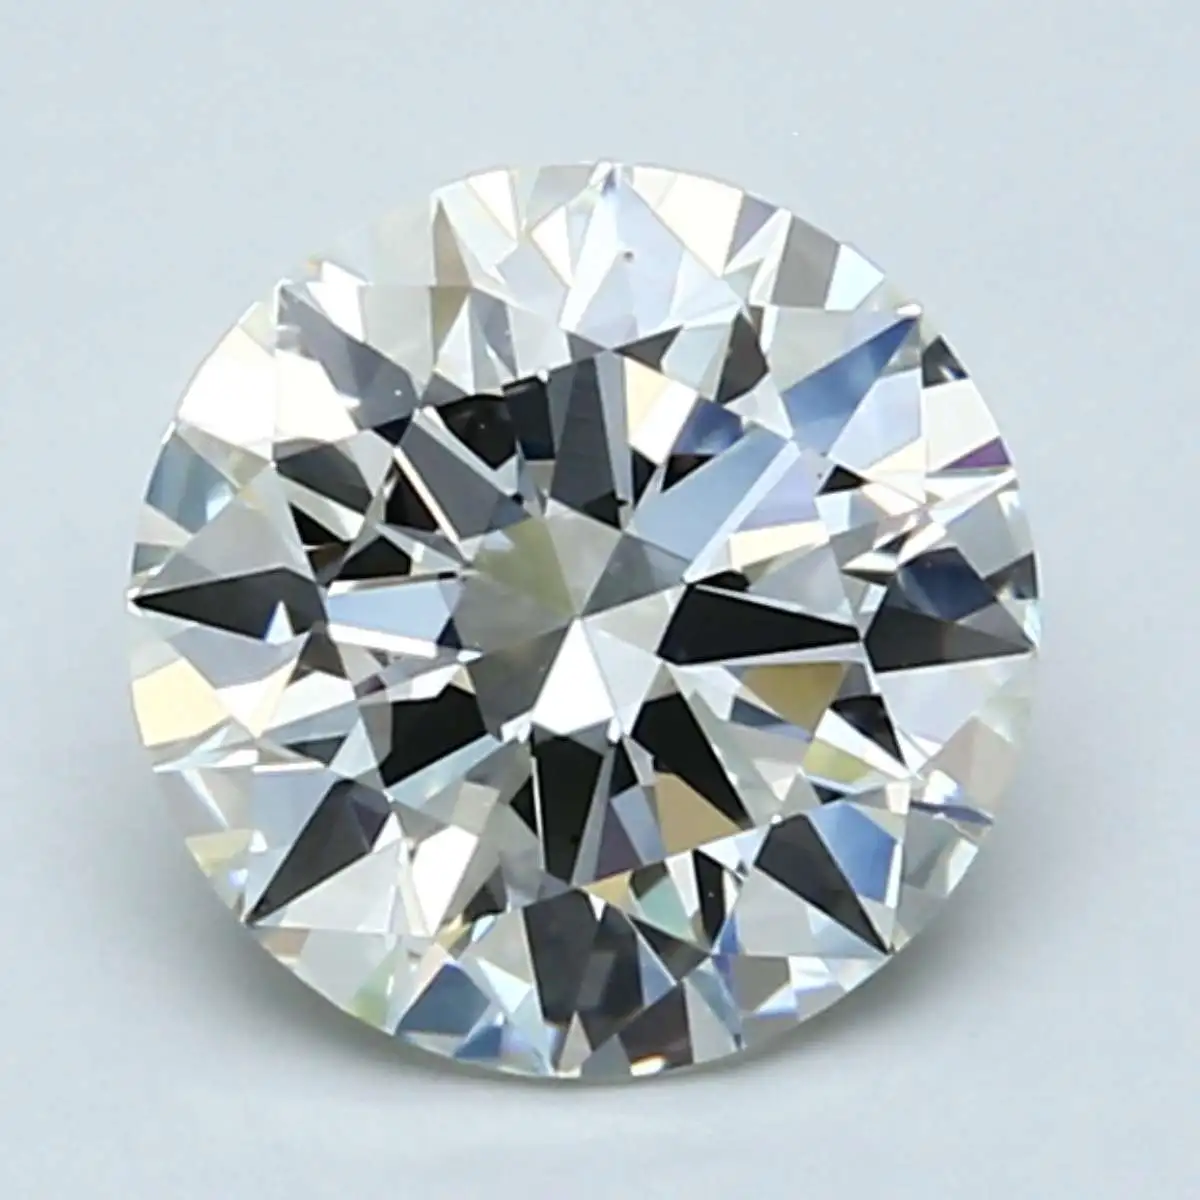 3 carat J color diamond with medium fluorscence